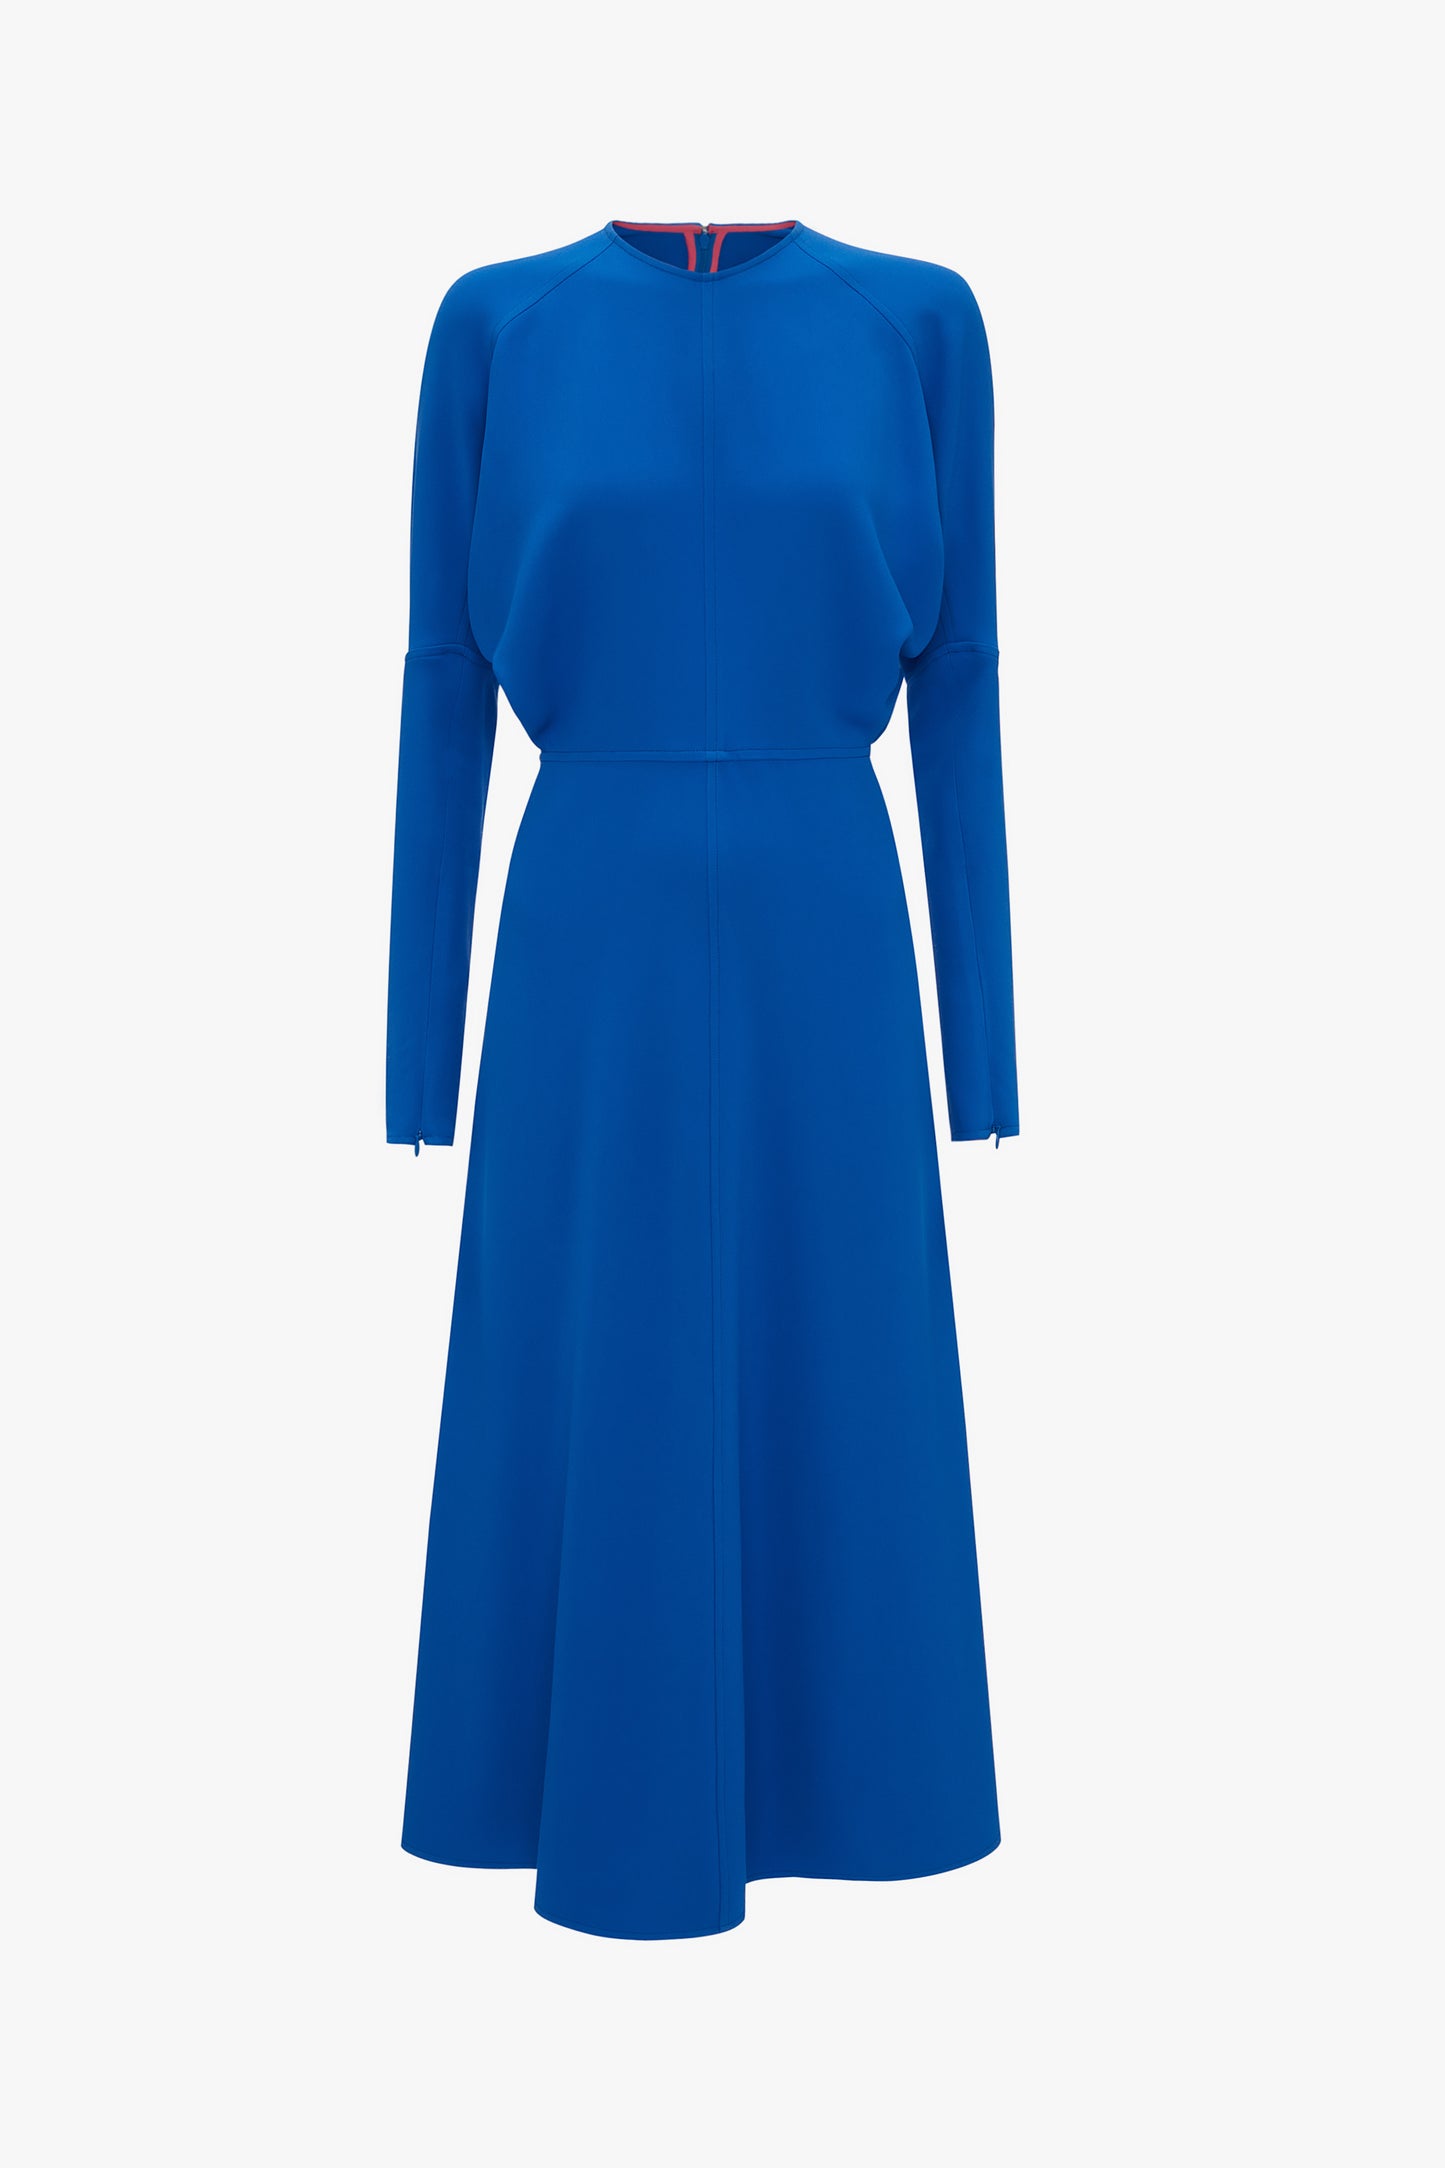 Dolman Midi Dress In Bright Blue